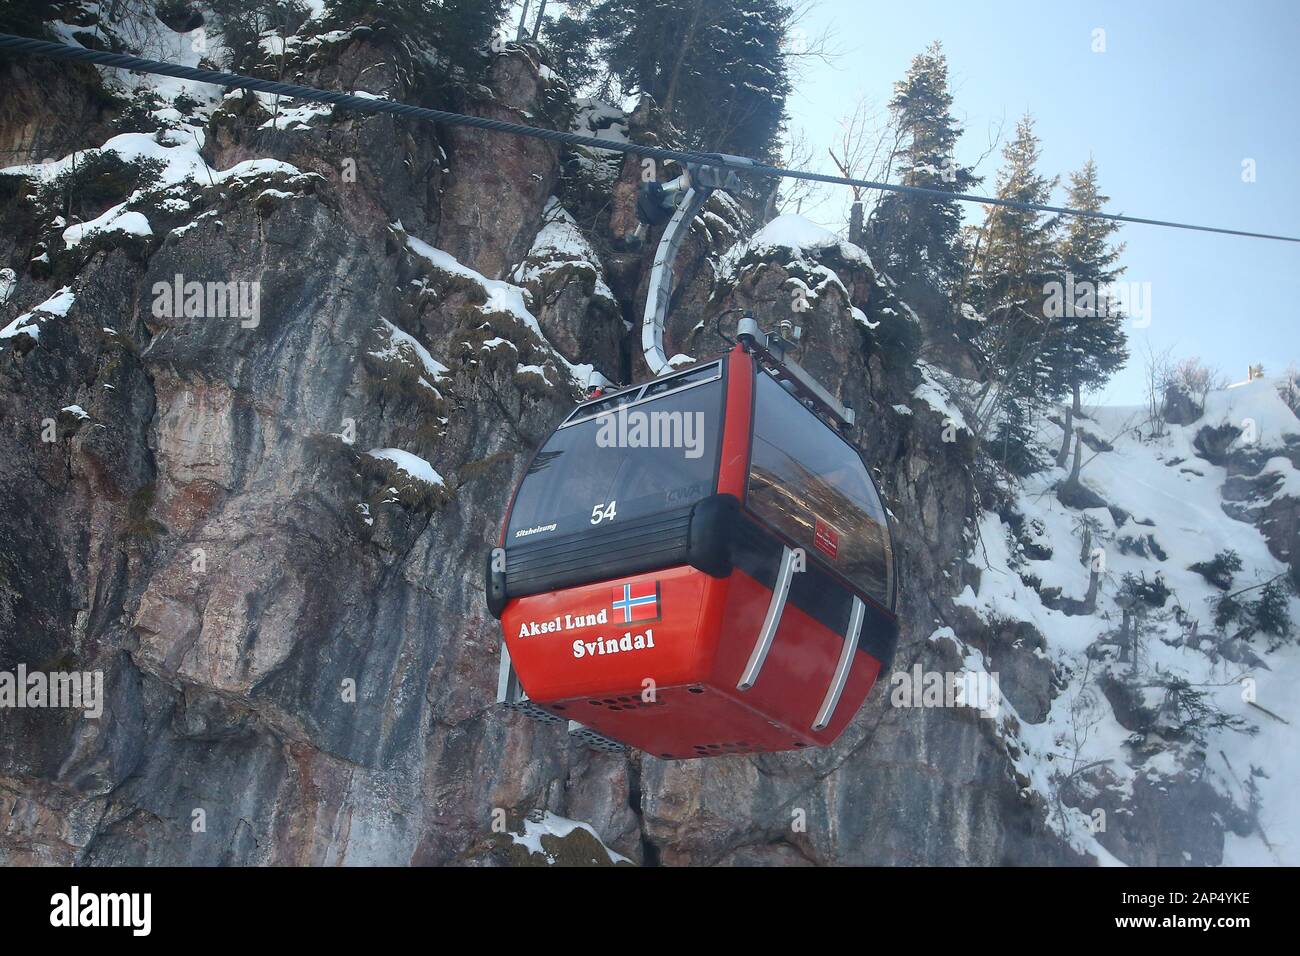 Vorschaubilder für die Audi FIS Alpine Ski World Cup Downhill Rennen am 21. Januar in Kitzbühel, Österreich 2020. Stockfoto